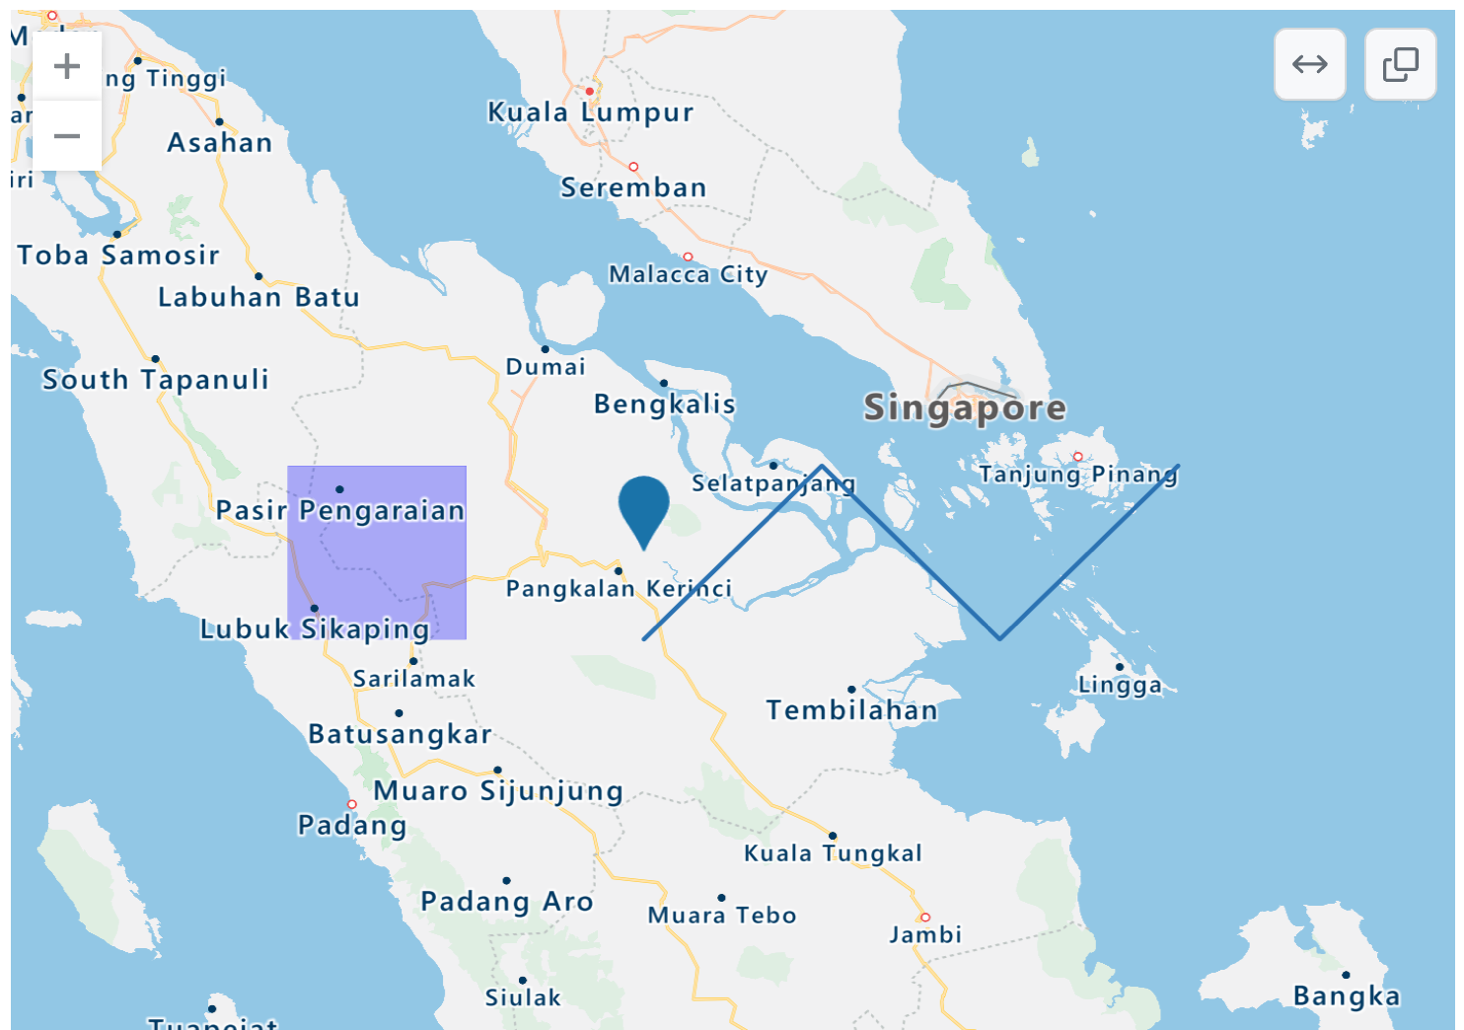 Screenshot einer gerenderten TopoJSON-Karte von Teilen Indonesiens, Singapurs und Malaysias mit einem blauen Punkt, einem violetten Rechteck und blauen Zickzacklinien.